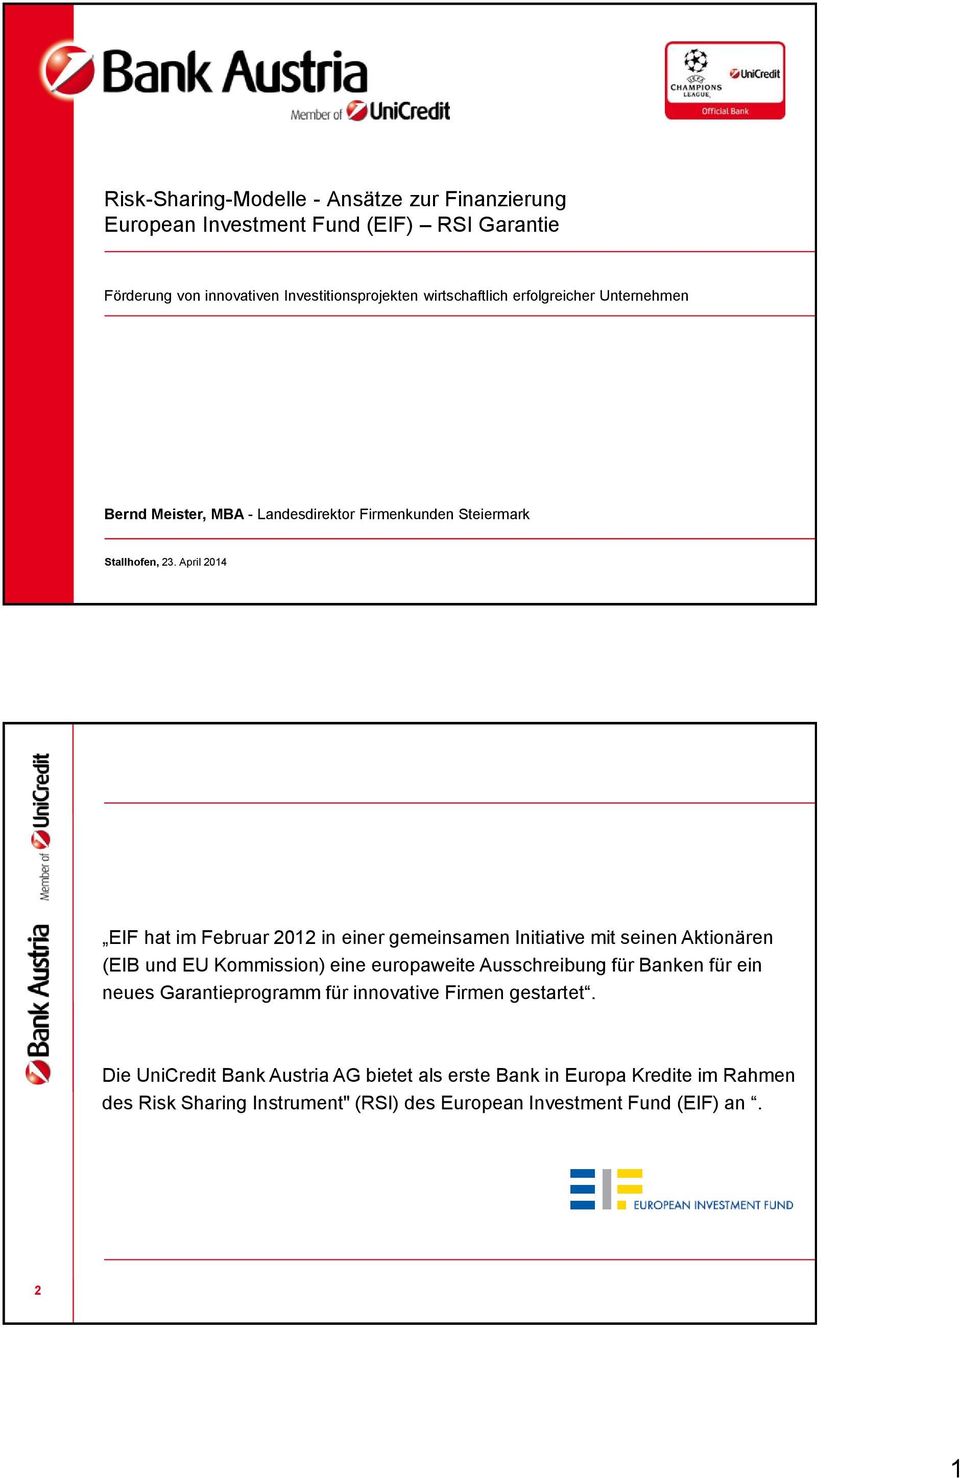 April 2014 EIF hat im Februar 2012 in einer gemeinsamen Initiative mit seinen Aktionären (EIB und EU Kommission) eine europaweite Ausschreibung für Banken für